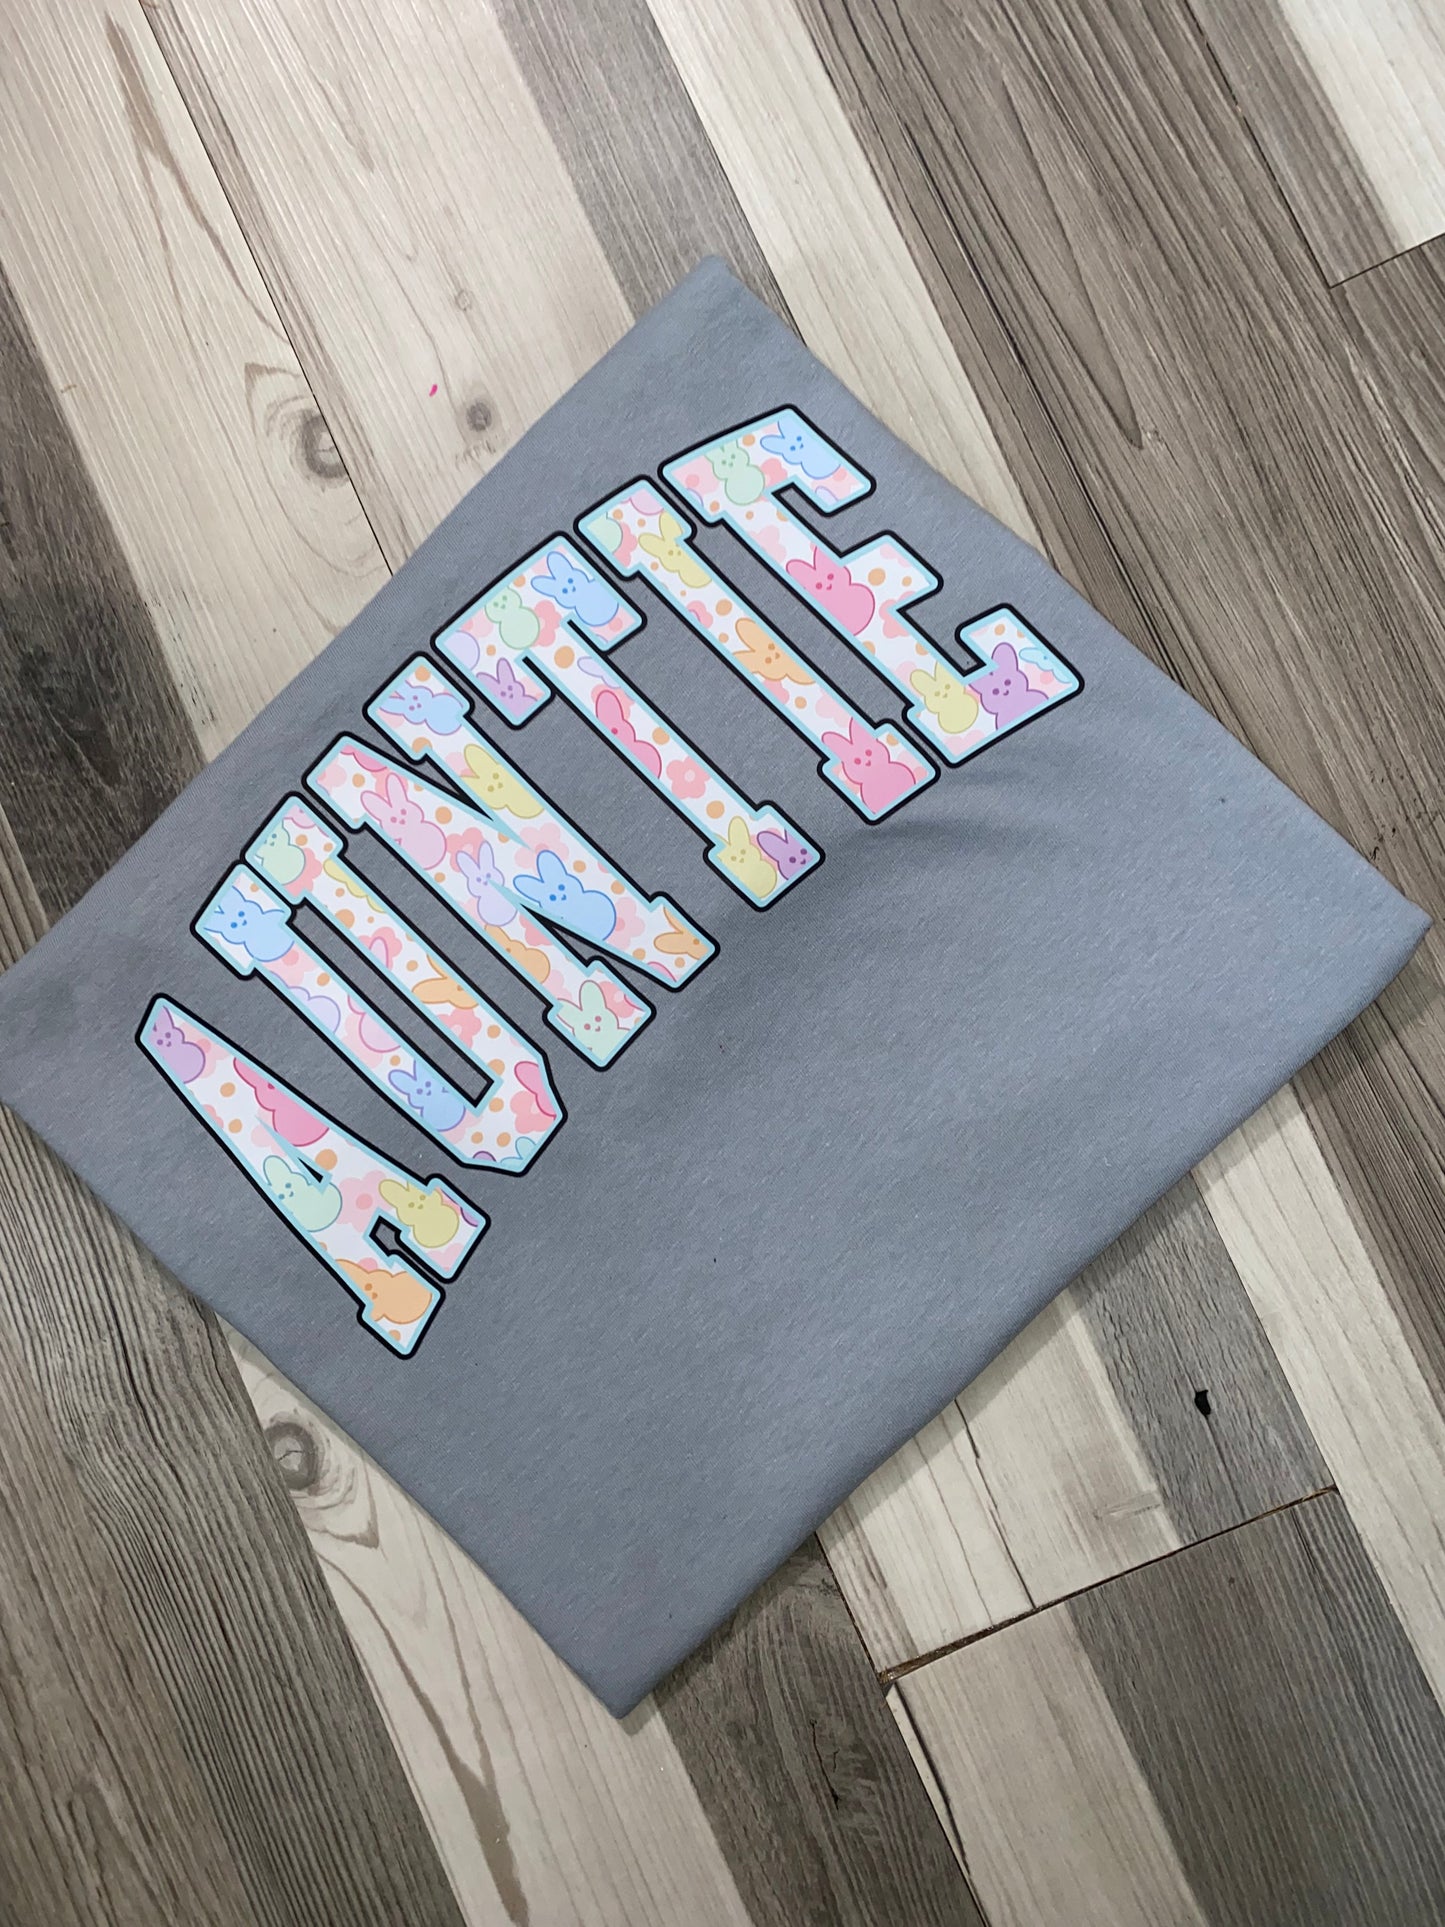 Auntie Peeps Shirt